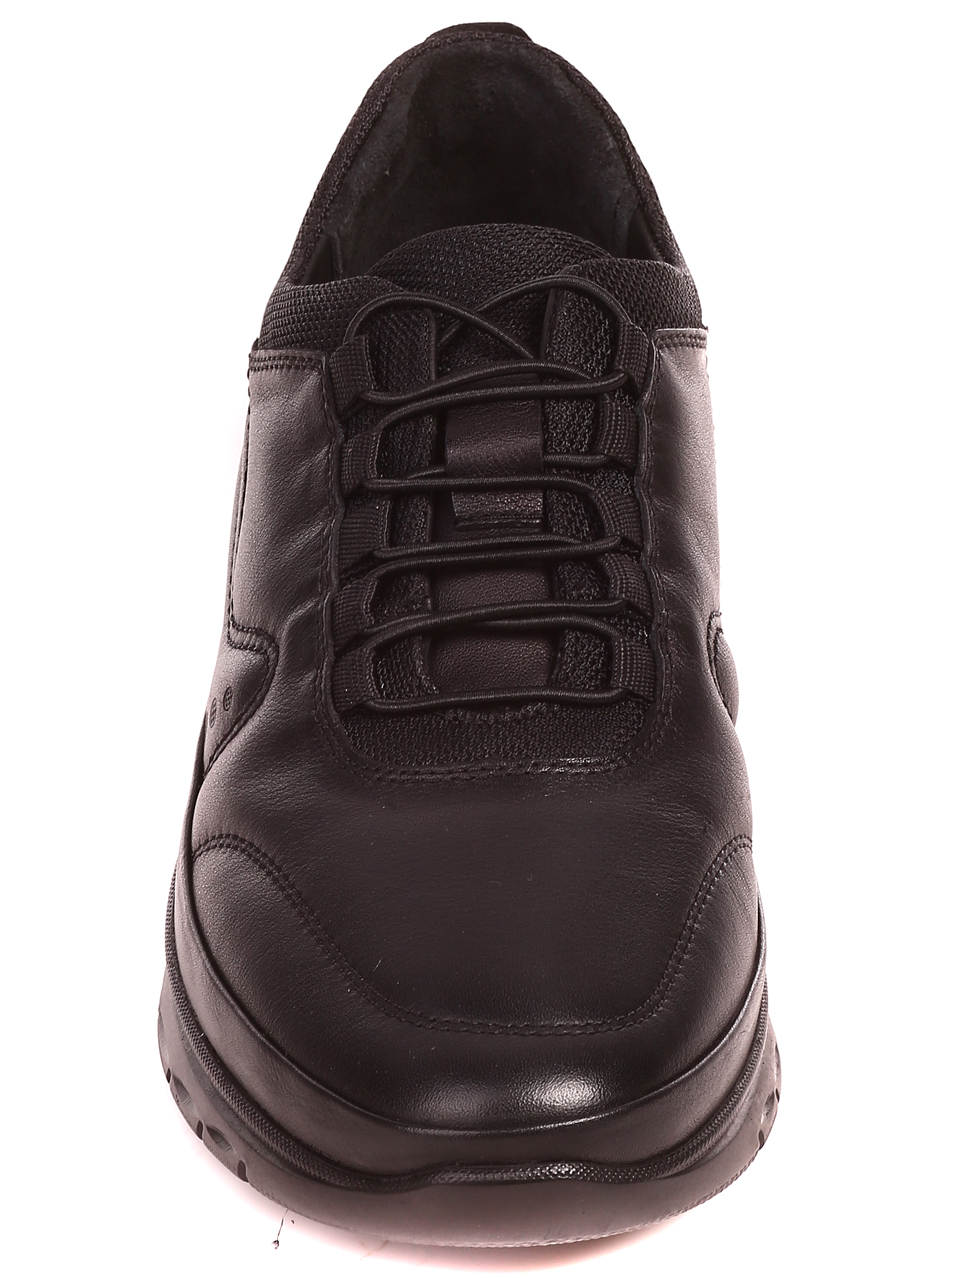 Ежедневни мъжки обувки от естествена кожа 7AT-22696 black